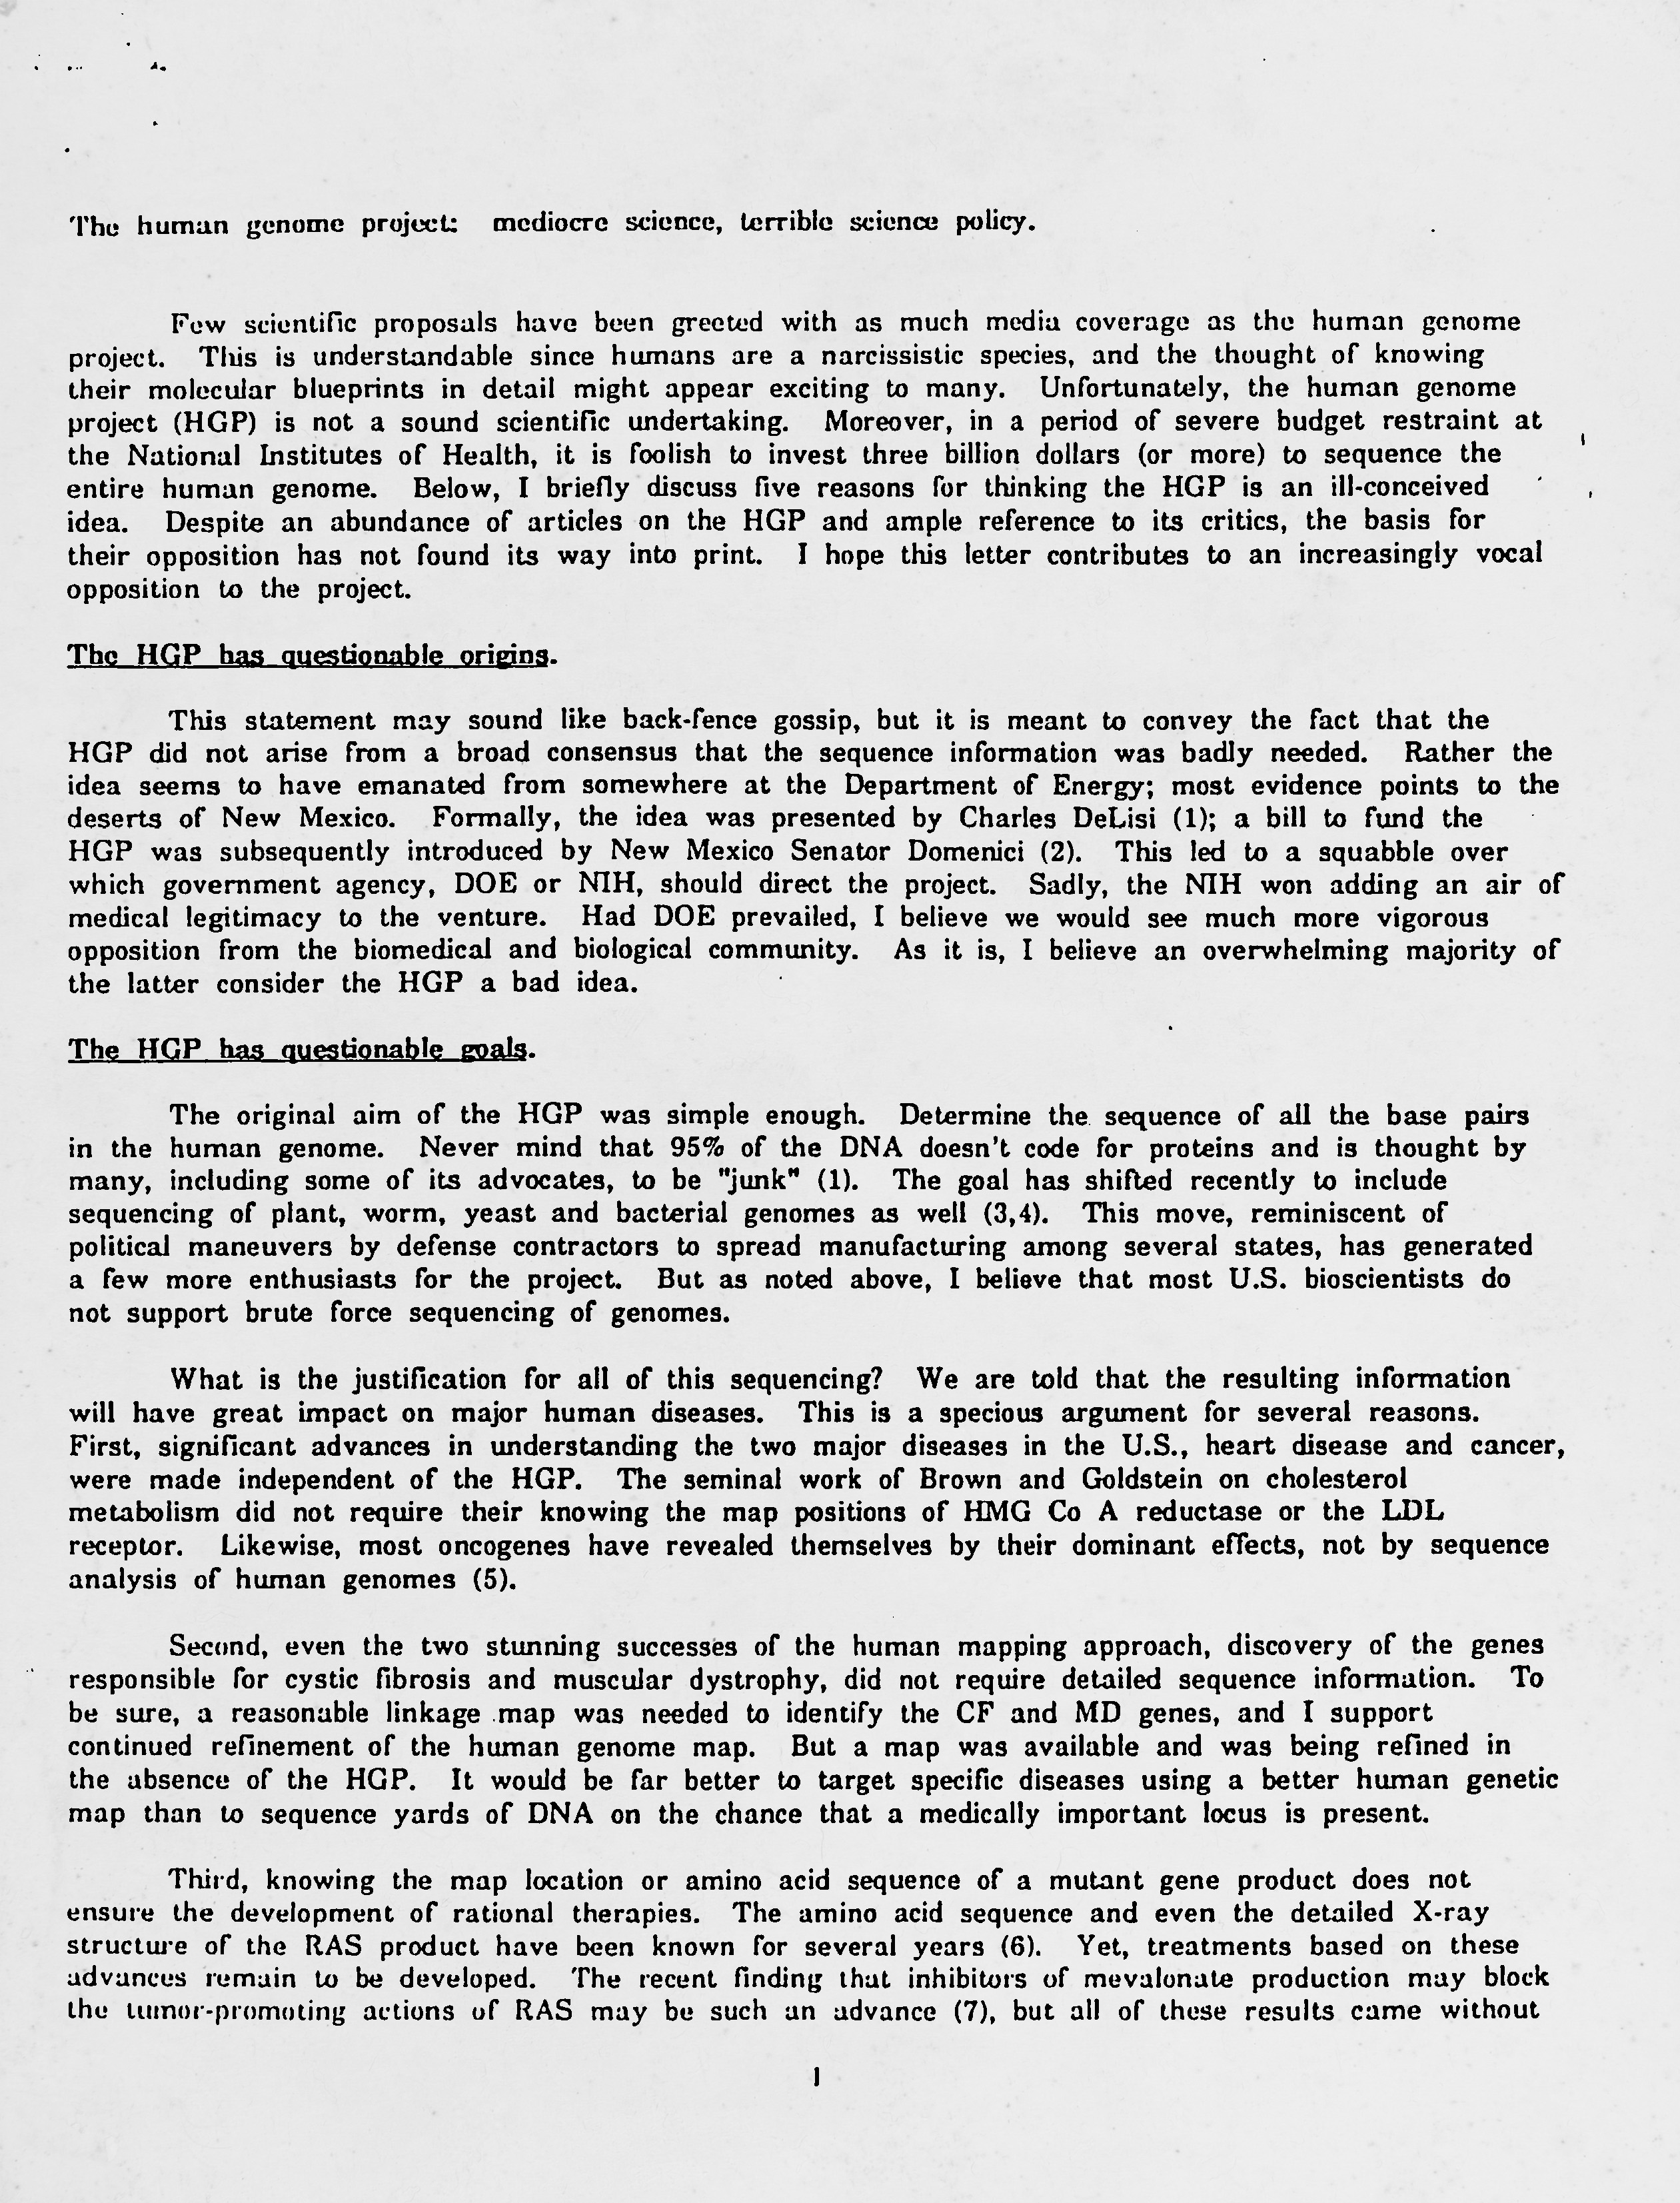 Anti-HGP Letter from Martin Rechsteiner